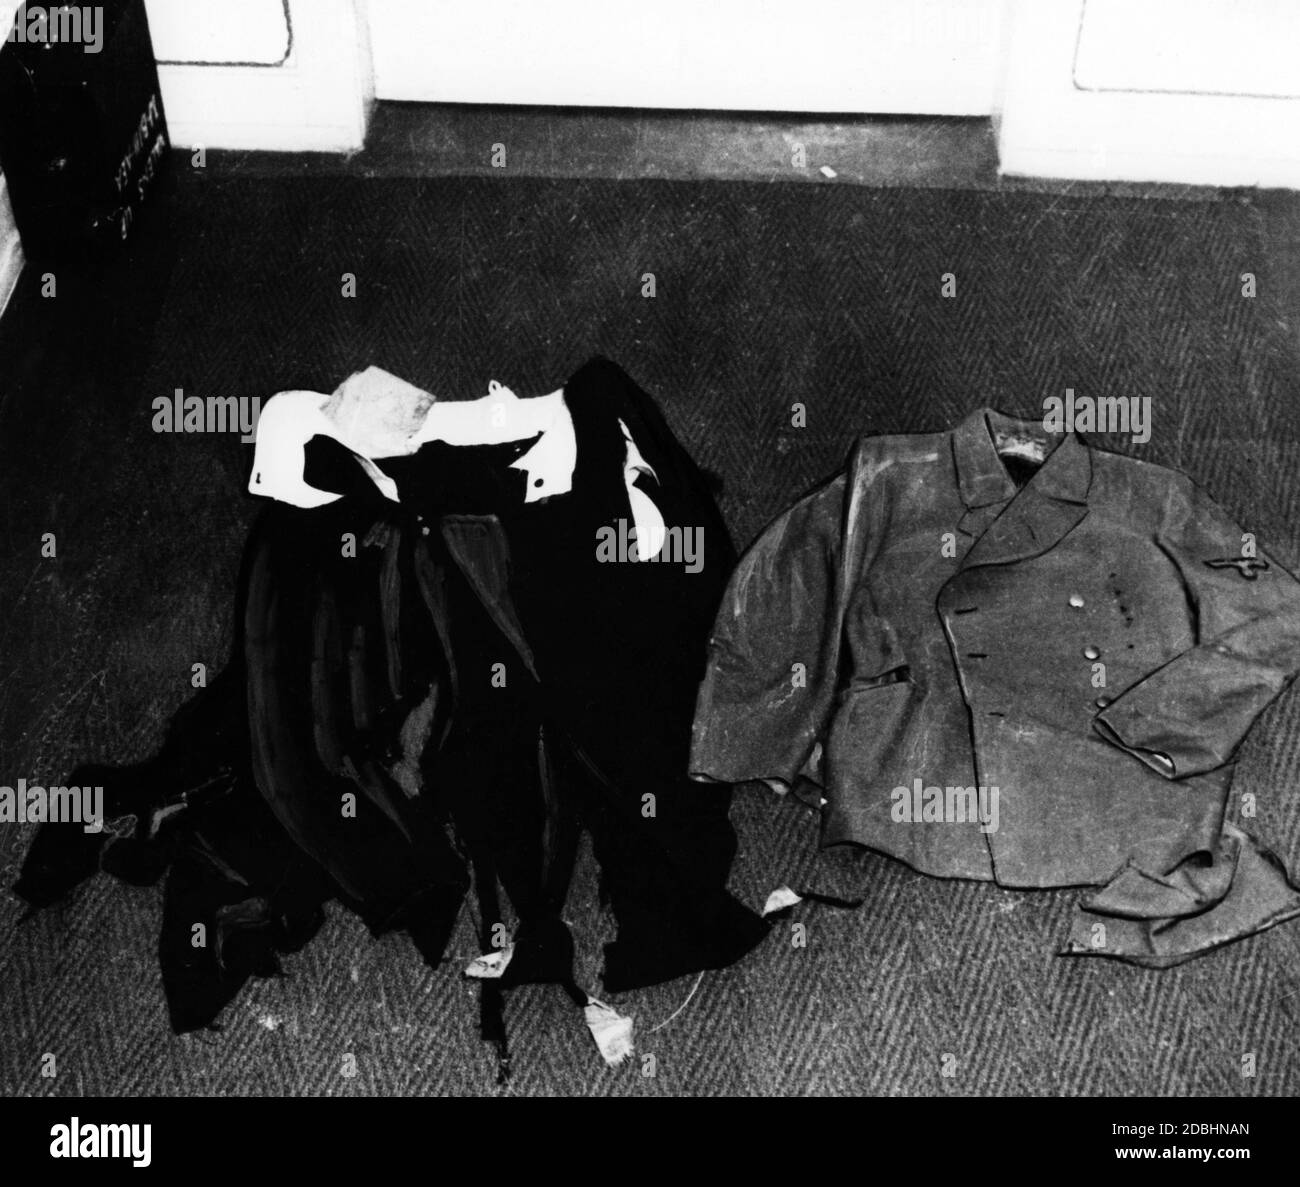 Después del final de la guerra, los investigadores militares estadounidenses encontraron estas piezas de ropa rasgadas en la propiedad de Eva Braun, que Adolf Hitler había usado durante el intento de asesinato el 20 de julio de 1944. Foto de stock